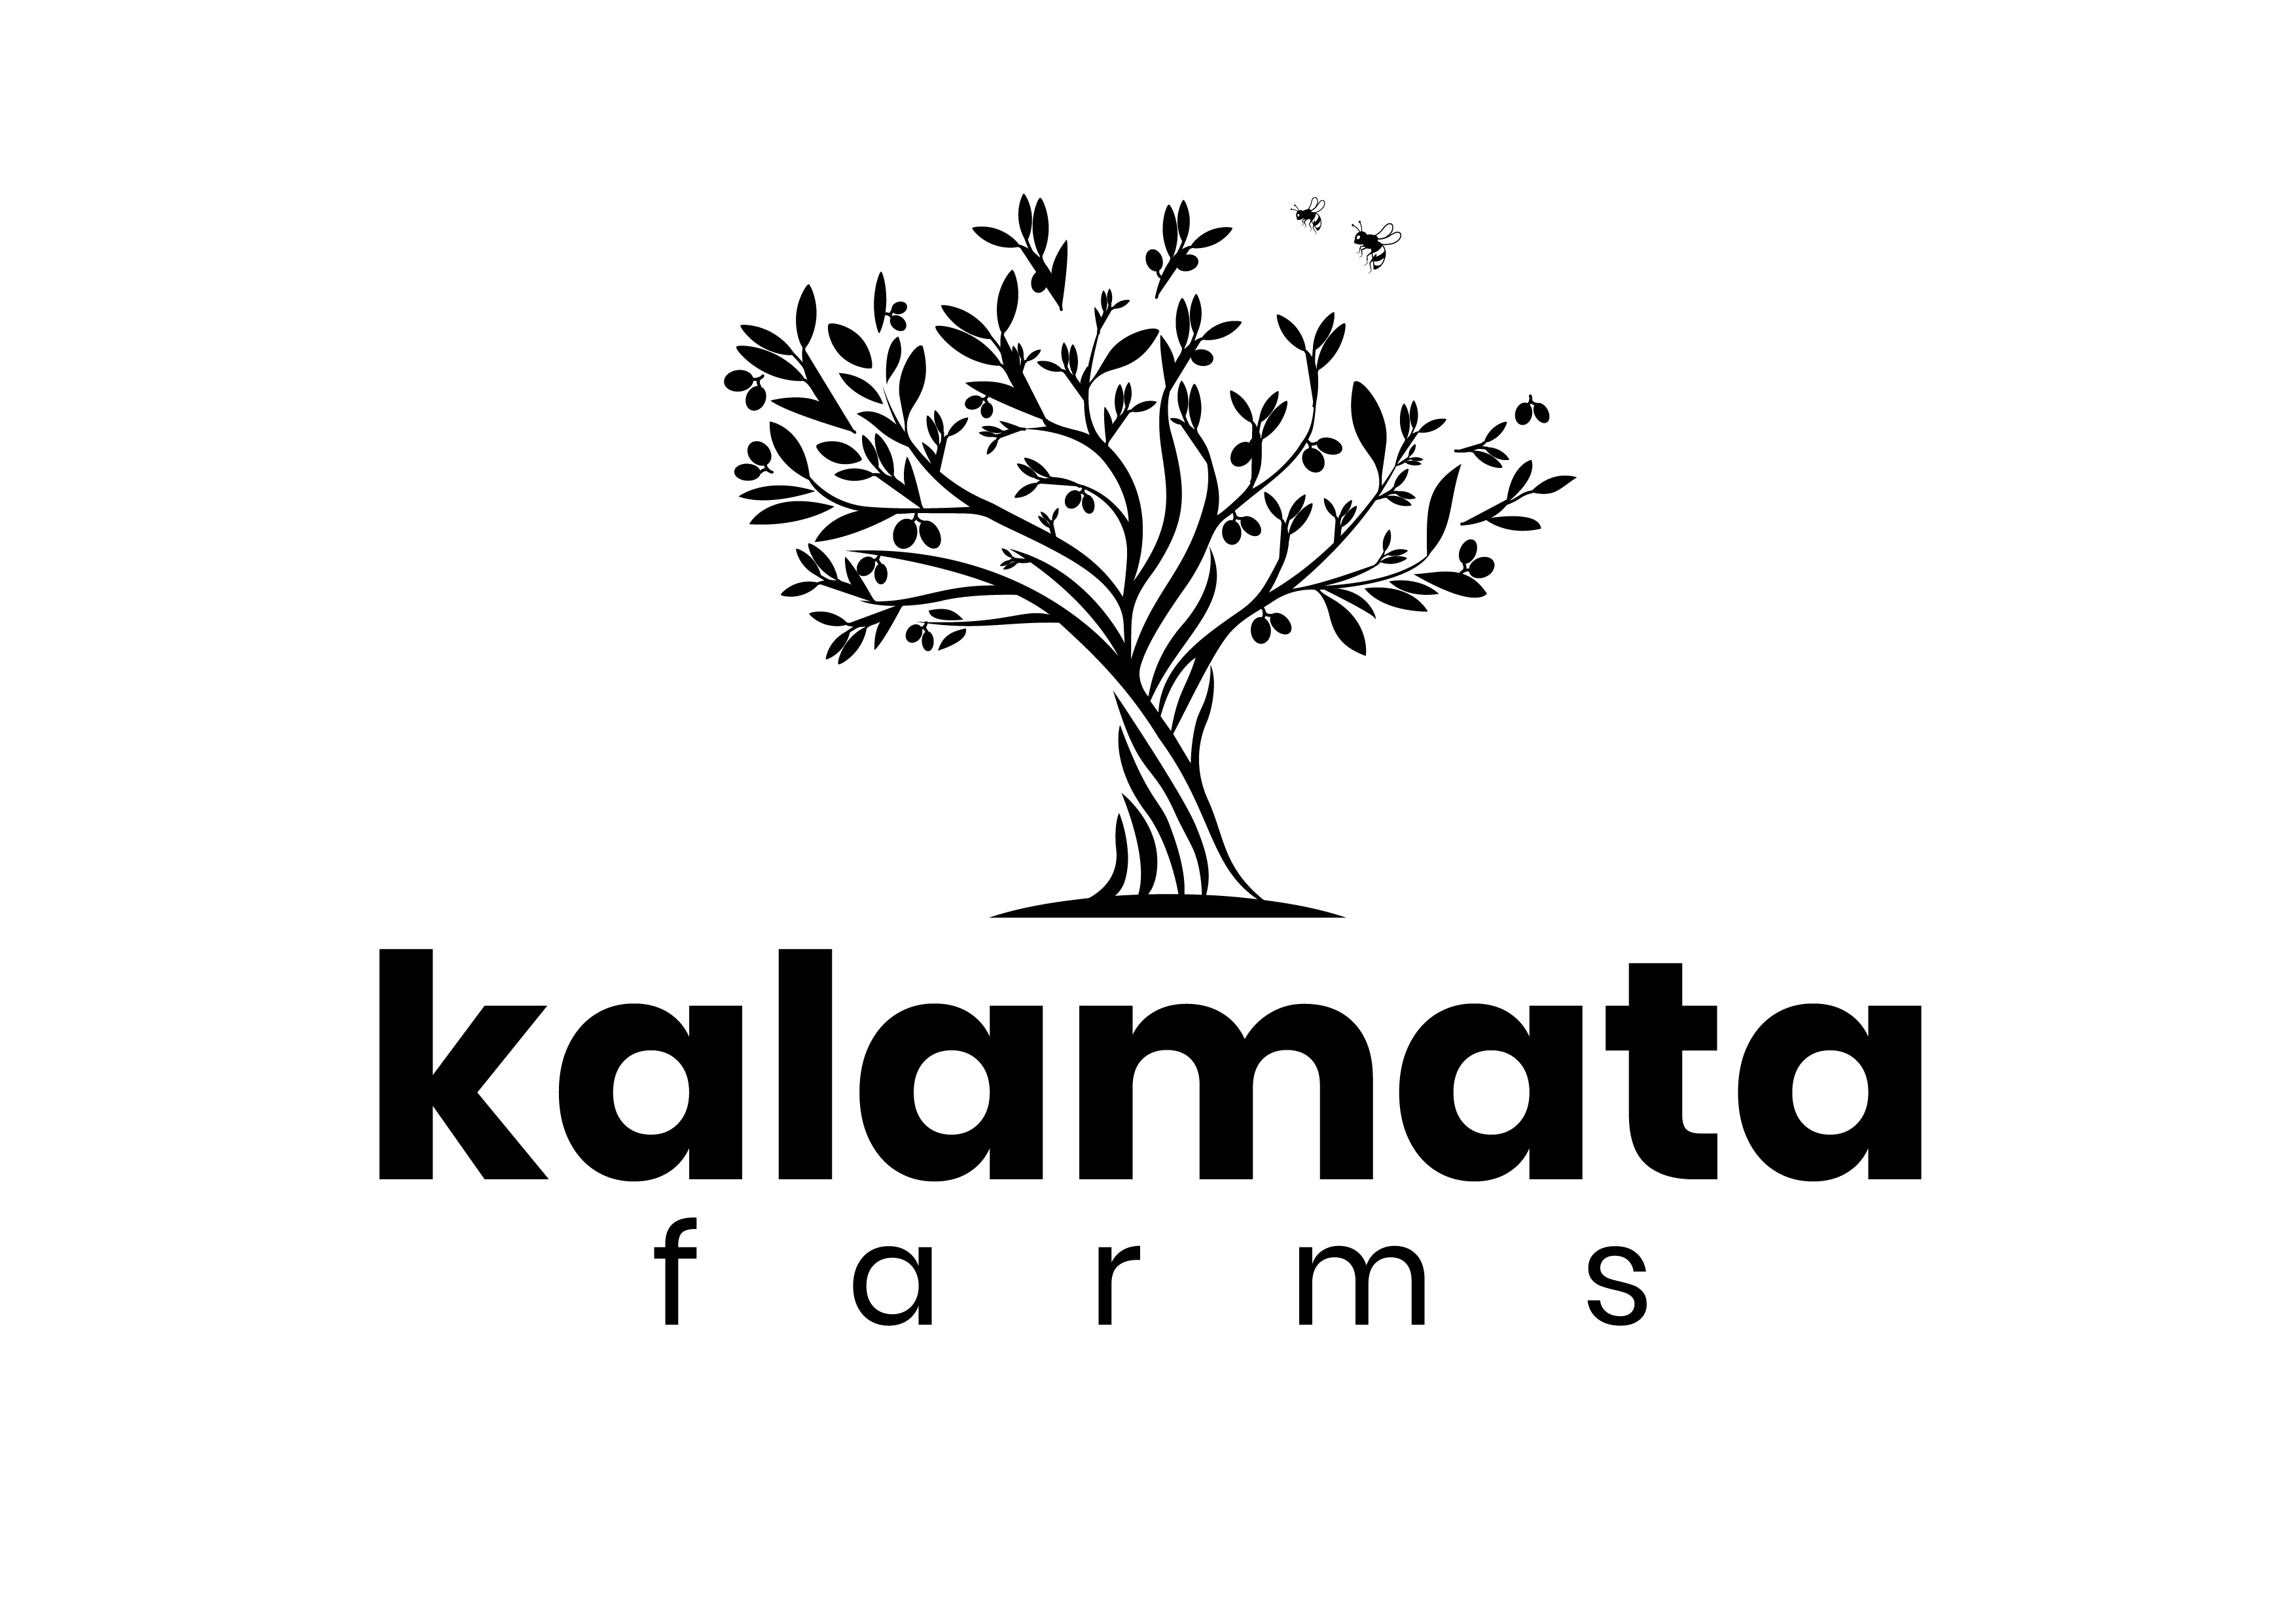 kalamatafarms.com